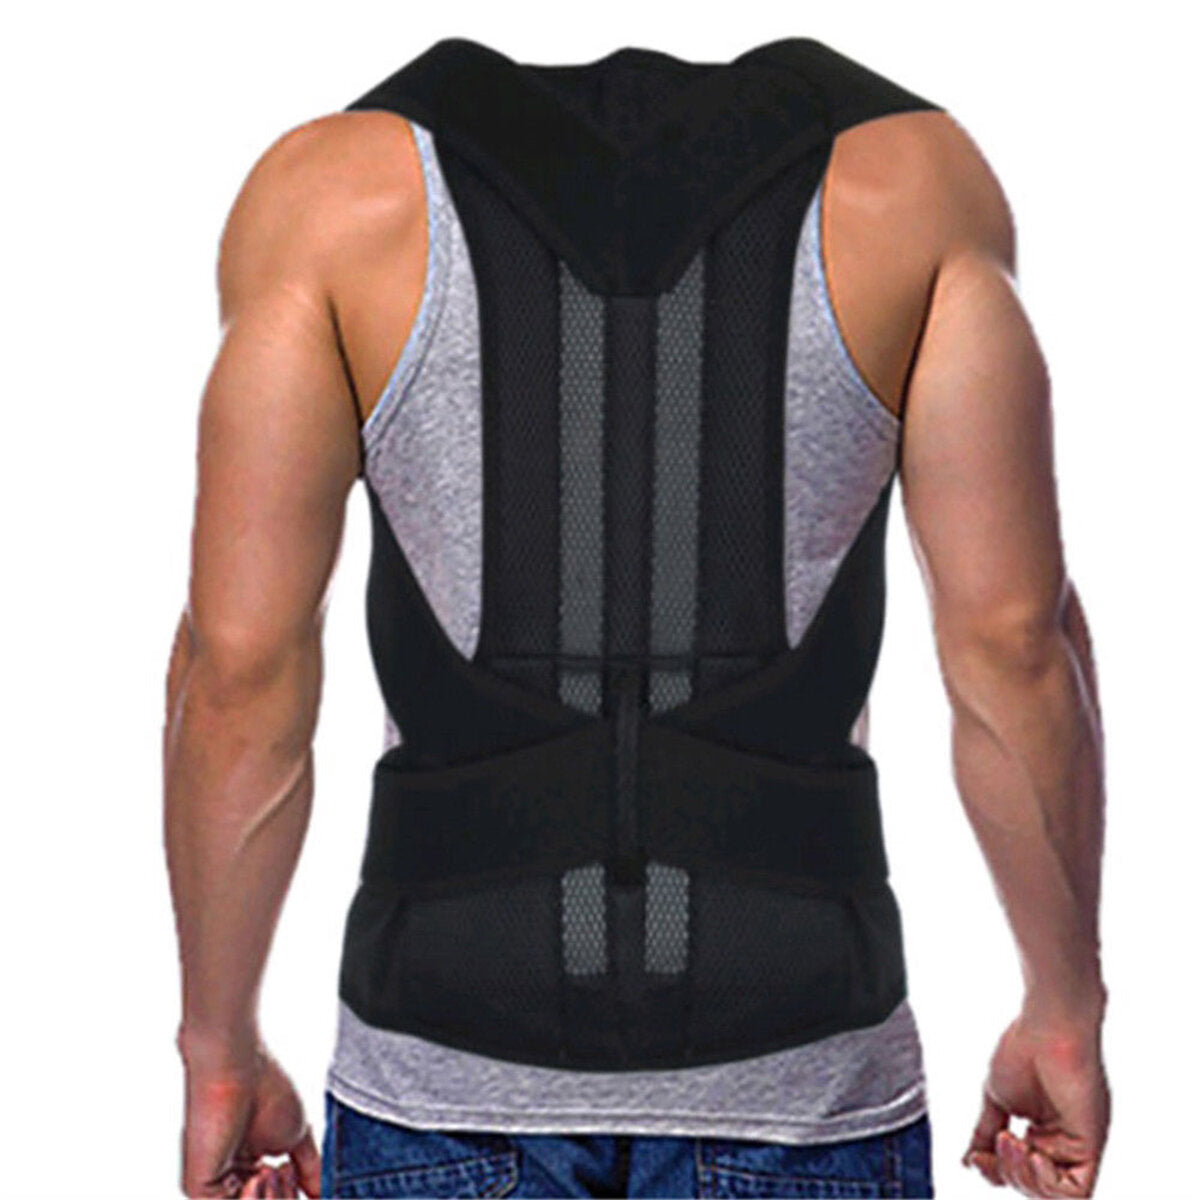 Adjustable Back Support Belt Back Posture Corrector Shoulder Lumbar Spine Support Back Protector